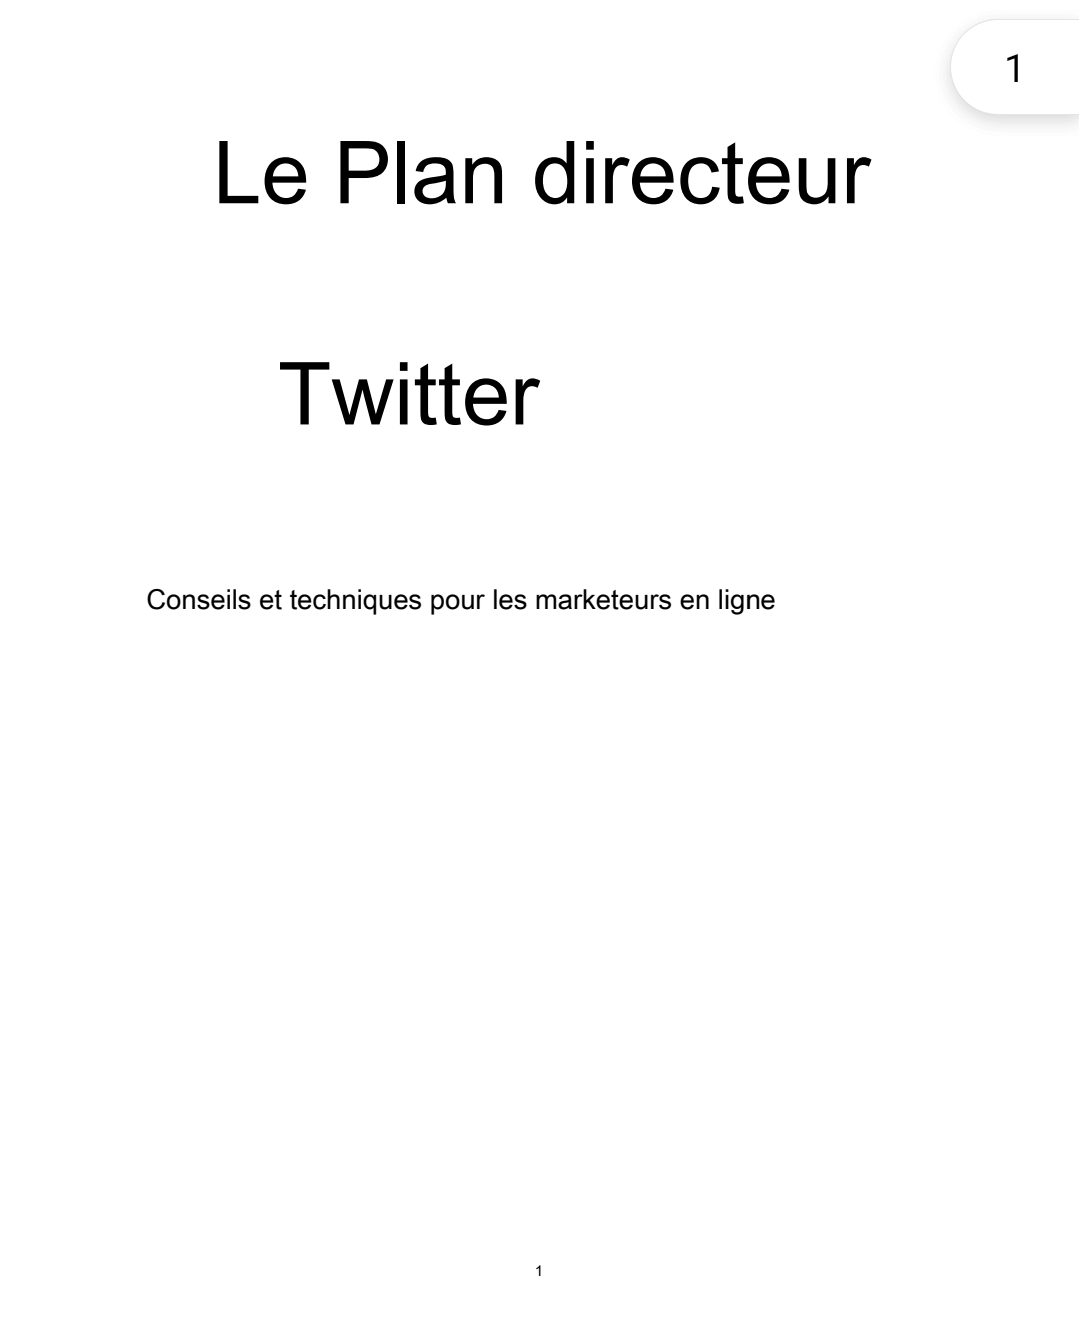 Le Plan directeur Twitter